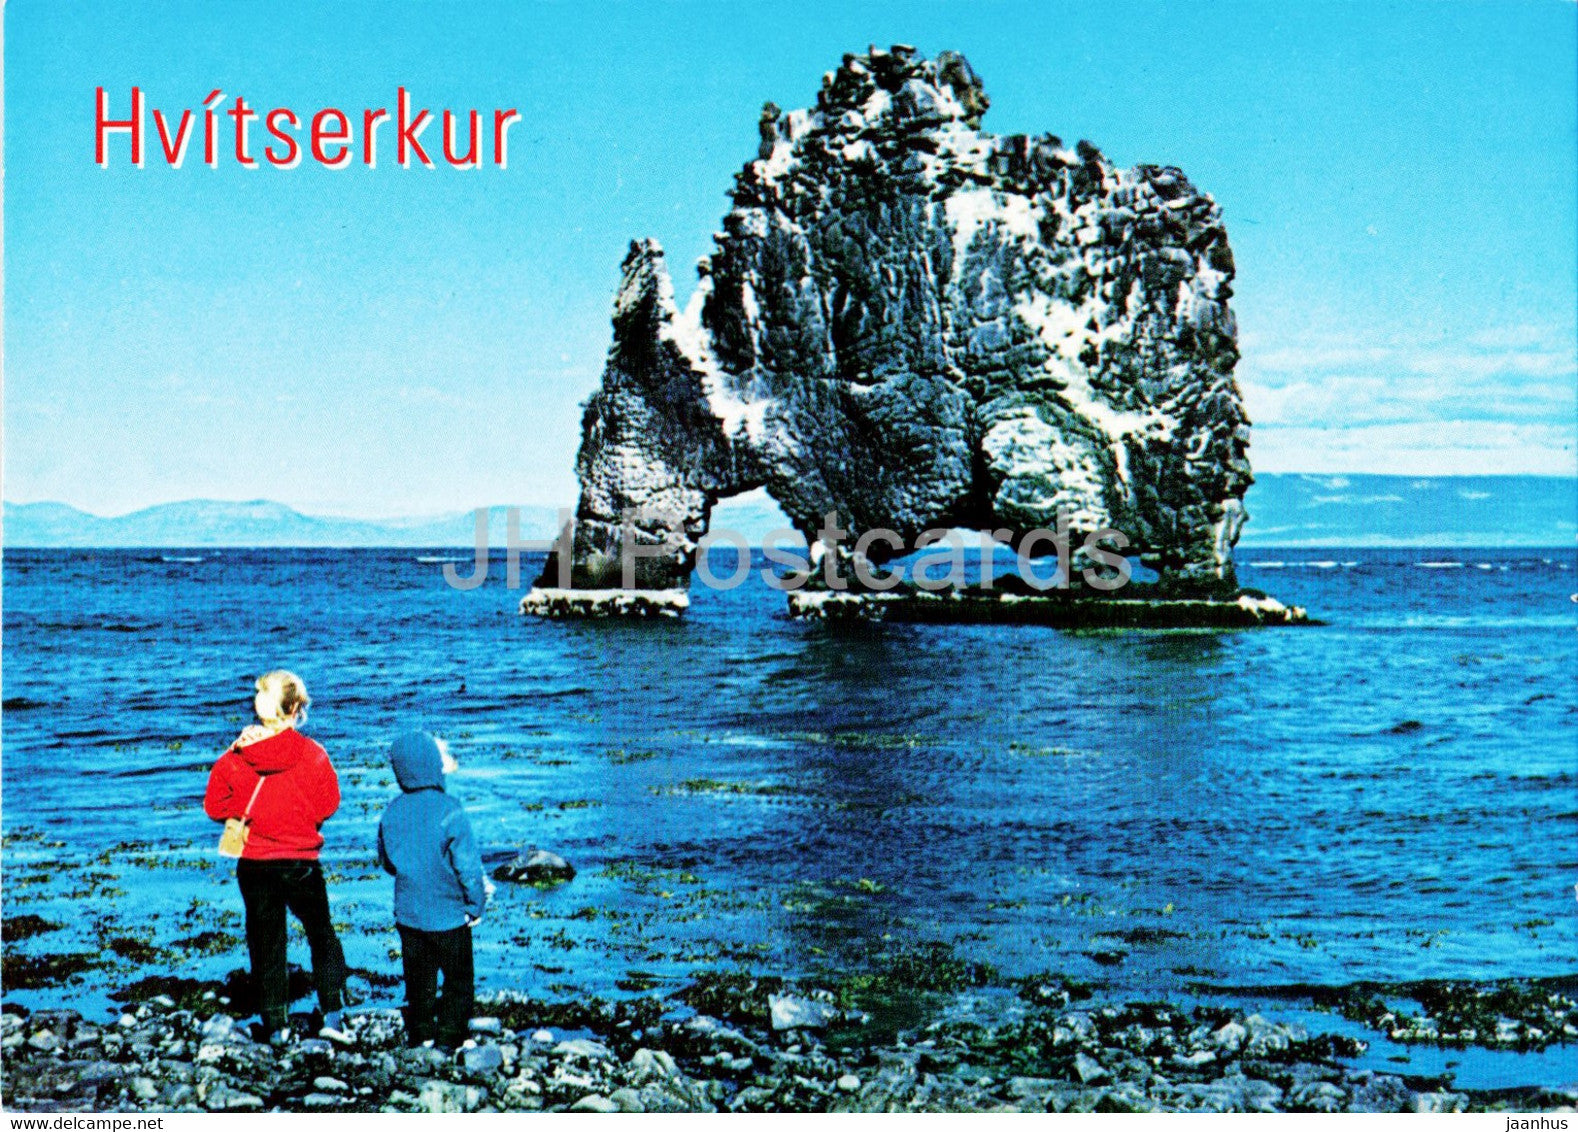 Hvitserkur rock - Iceland - unused - JH Postcards